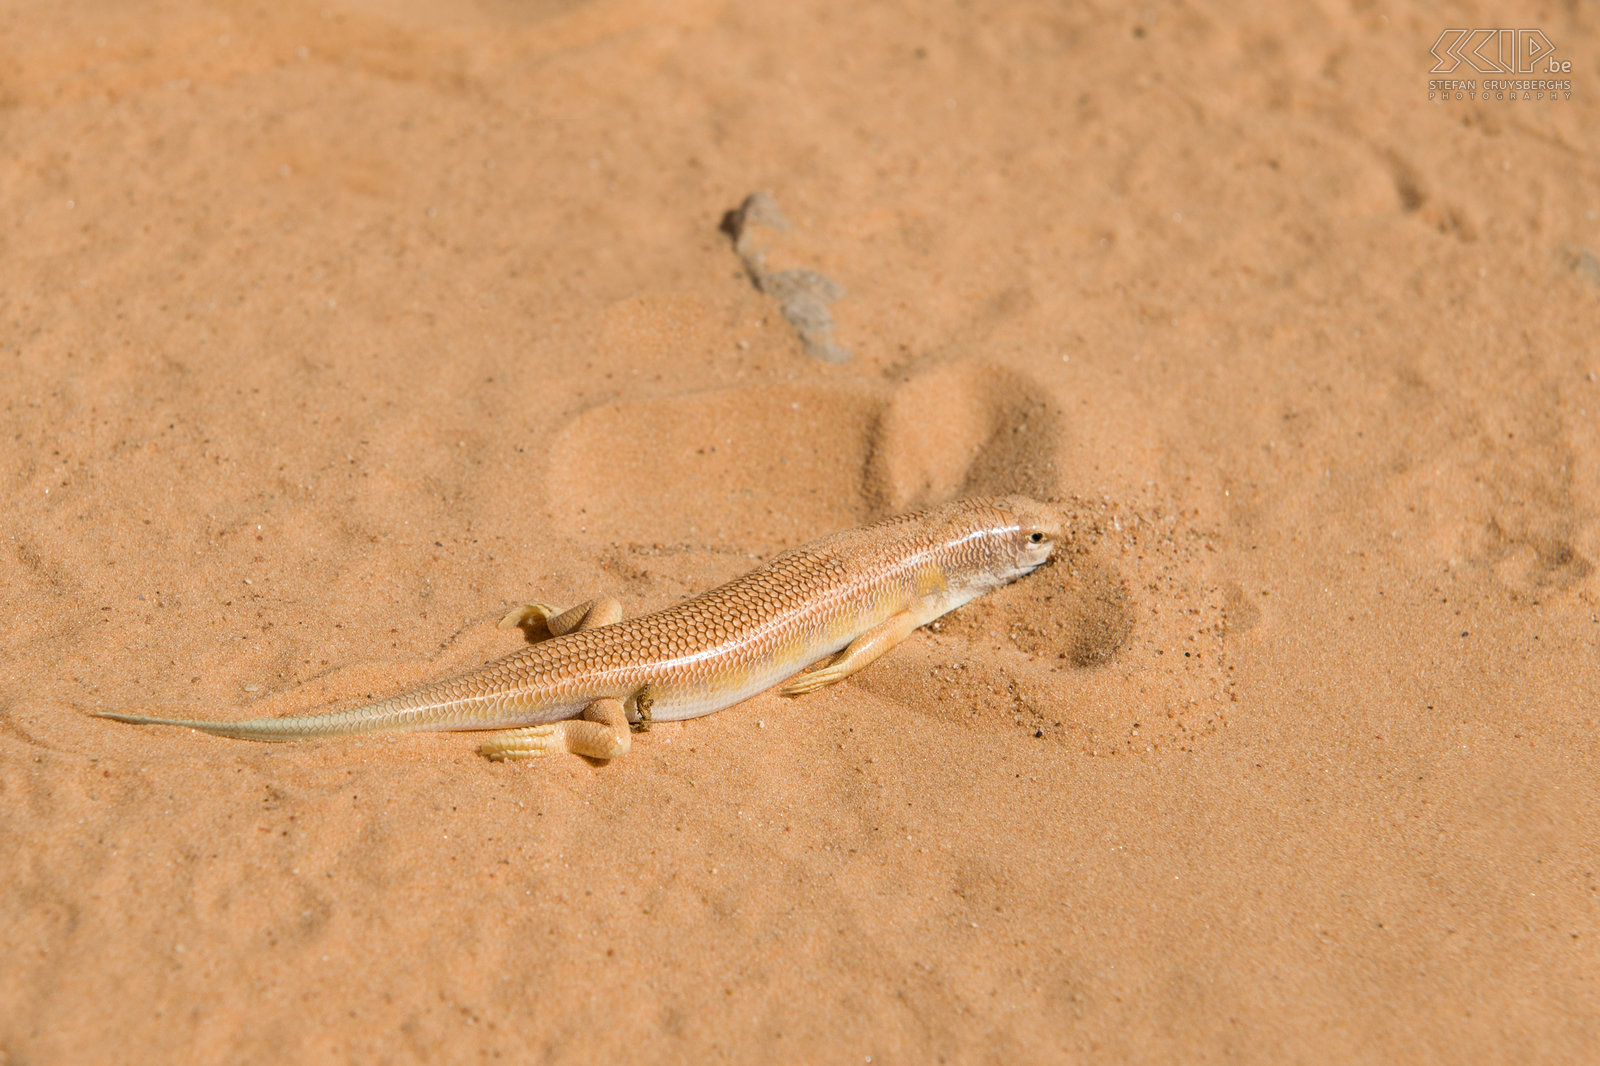 Apothekersskink Deze hagedis (Scincus scincus) kan als een vis in het zand zwemmen in het Engels noemt dit beestje dan ook 'Sandfish' en in het Frans 'Poisson de sable'. In het Nederlands is het een Apothekersskink. Stefan Cruysberghs